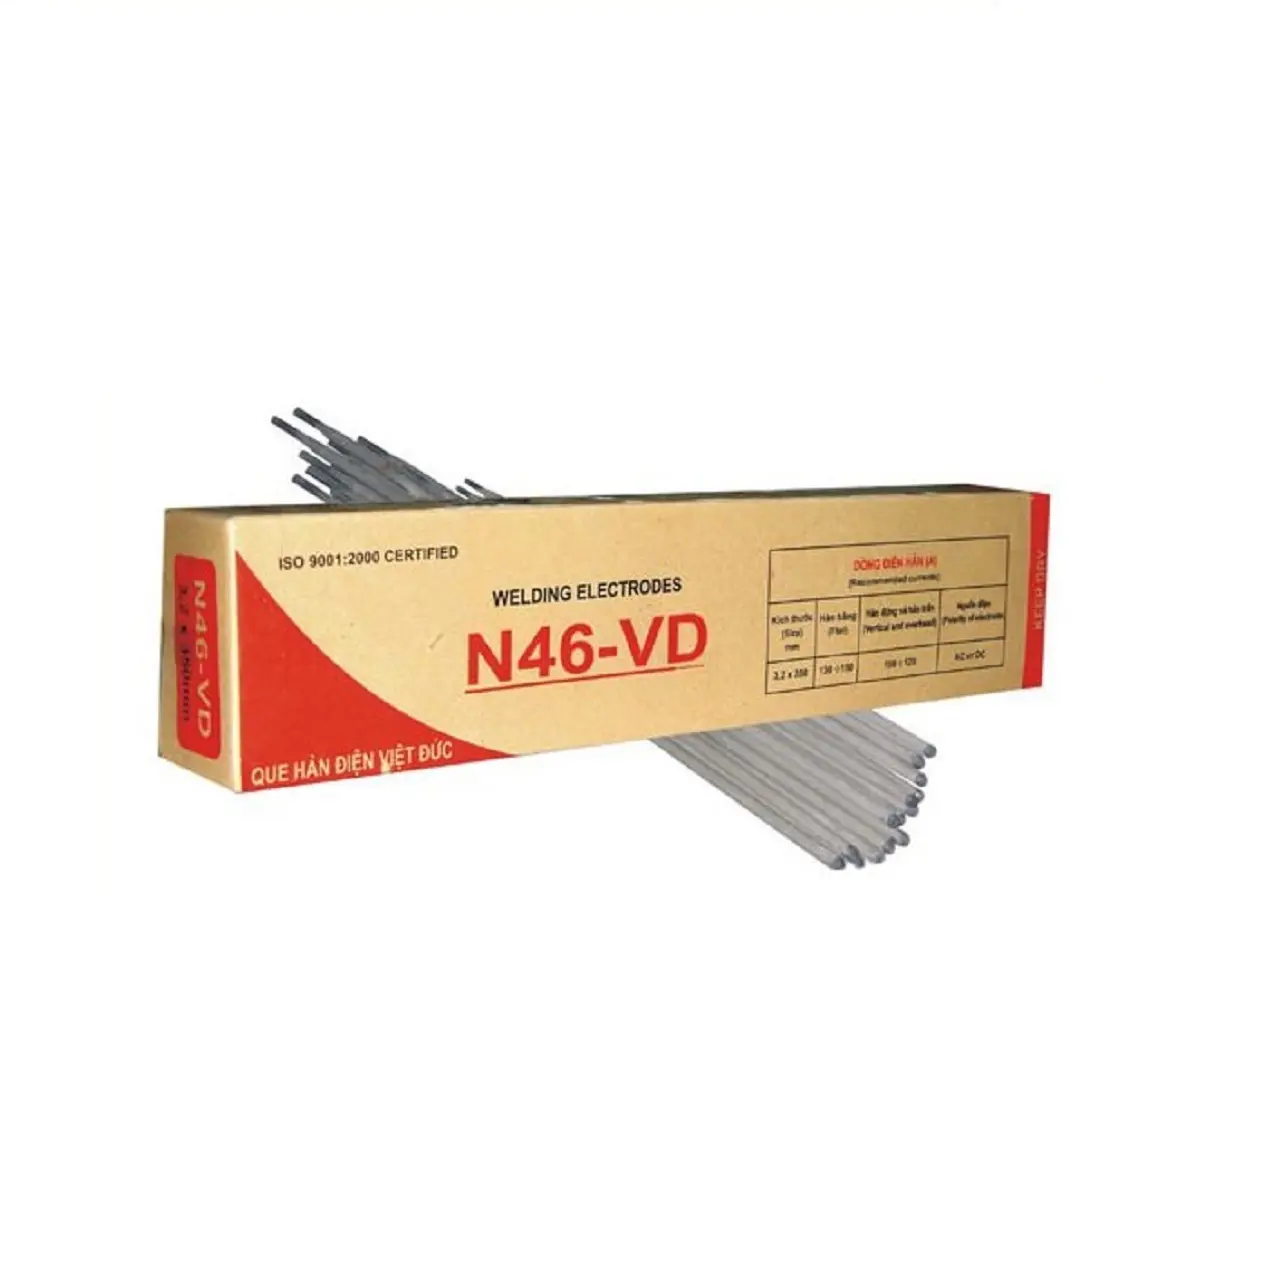 Schweiß elektroden für Handelsmarken-Wiederverkäufer N46-VD hergestellt in Vietnam - Viet Duc zertifizierter Hersteller